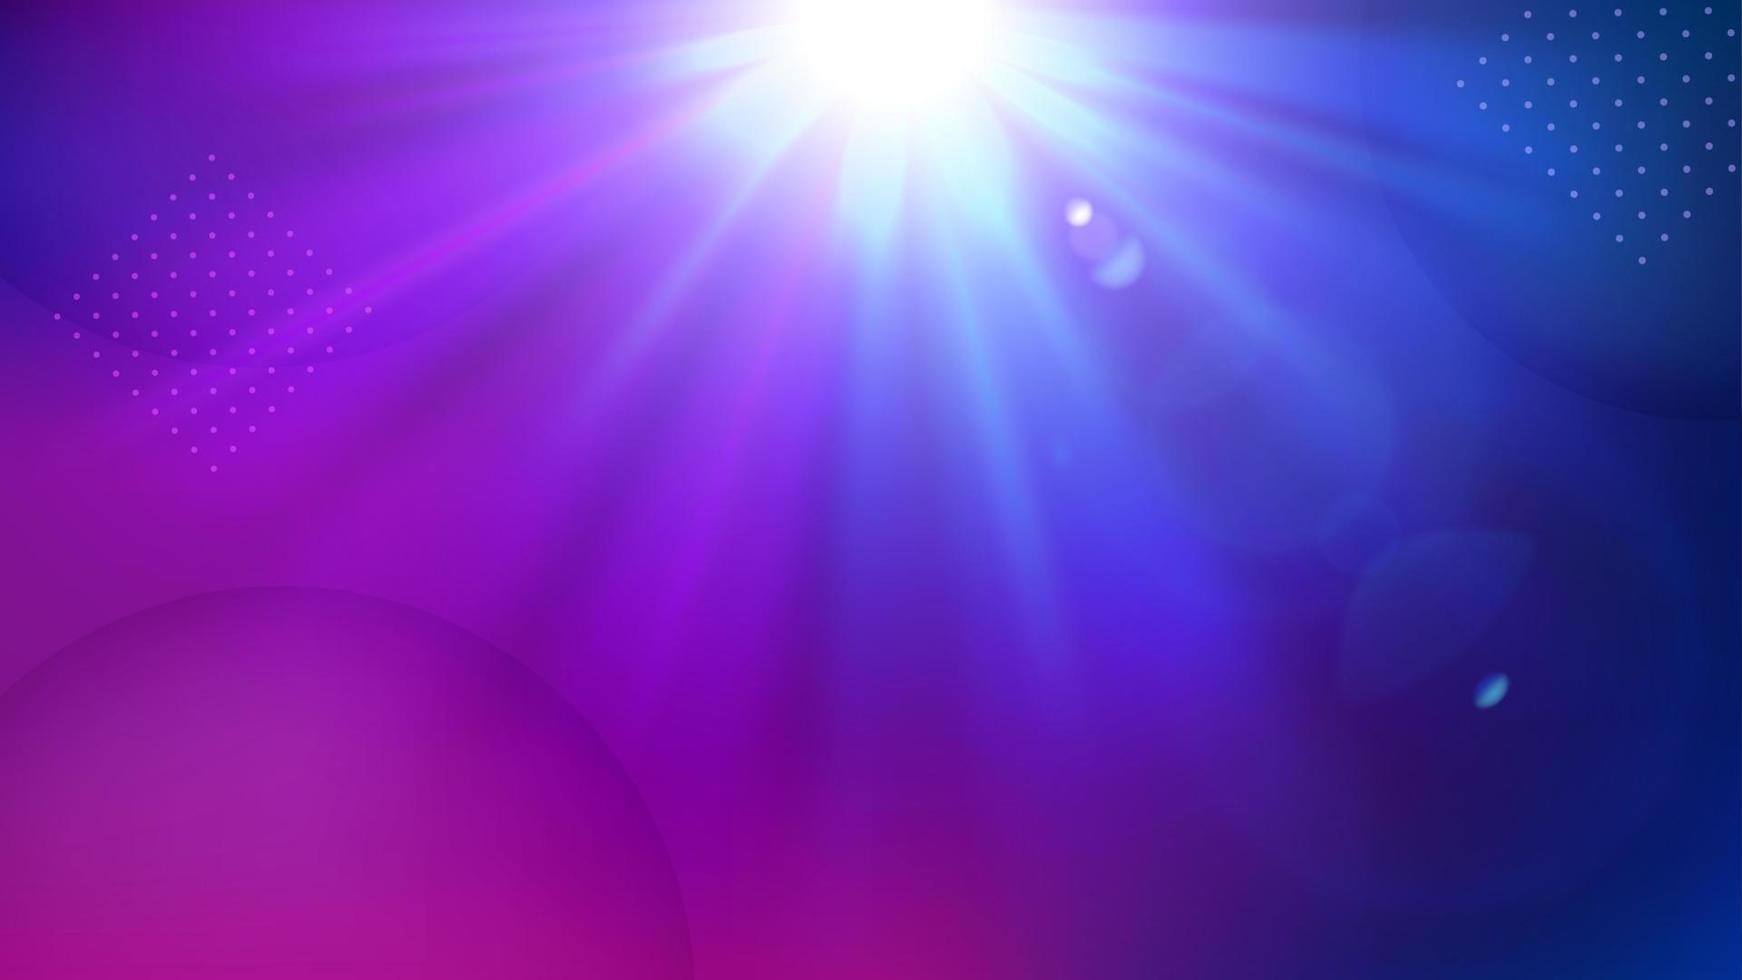 violett ljus skinande bakgrund, elegant upplyst ljus. widescreen vektor illustration